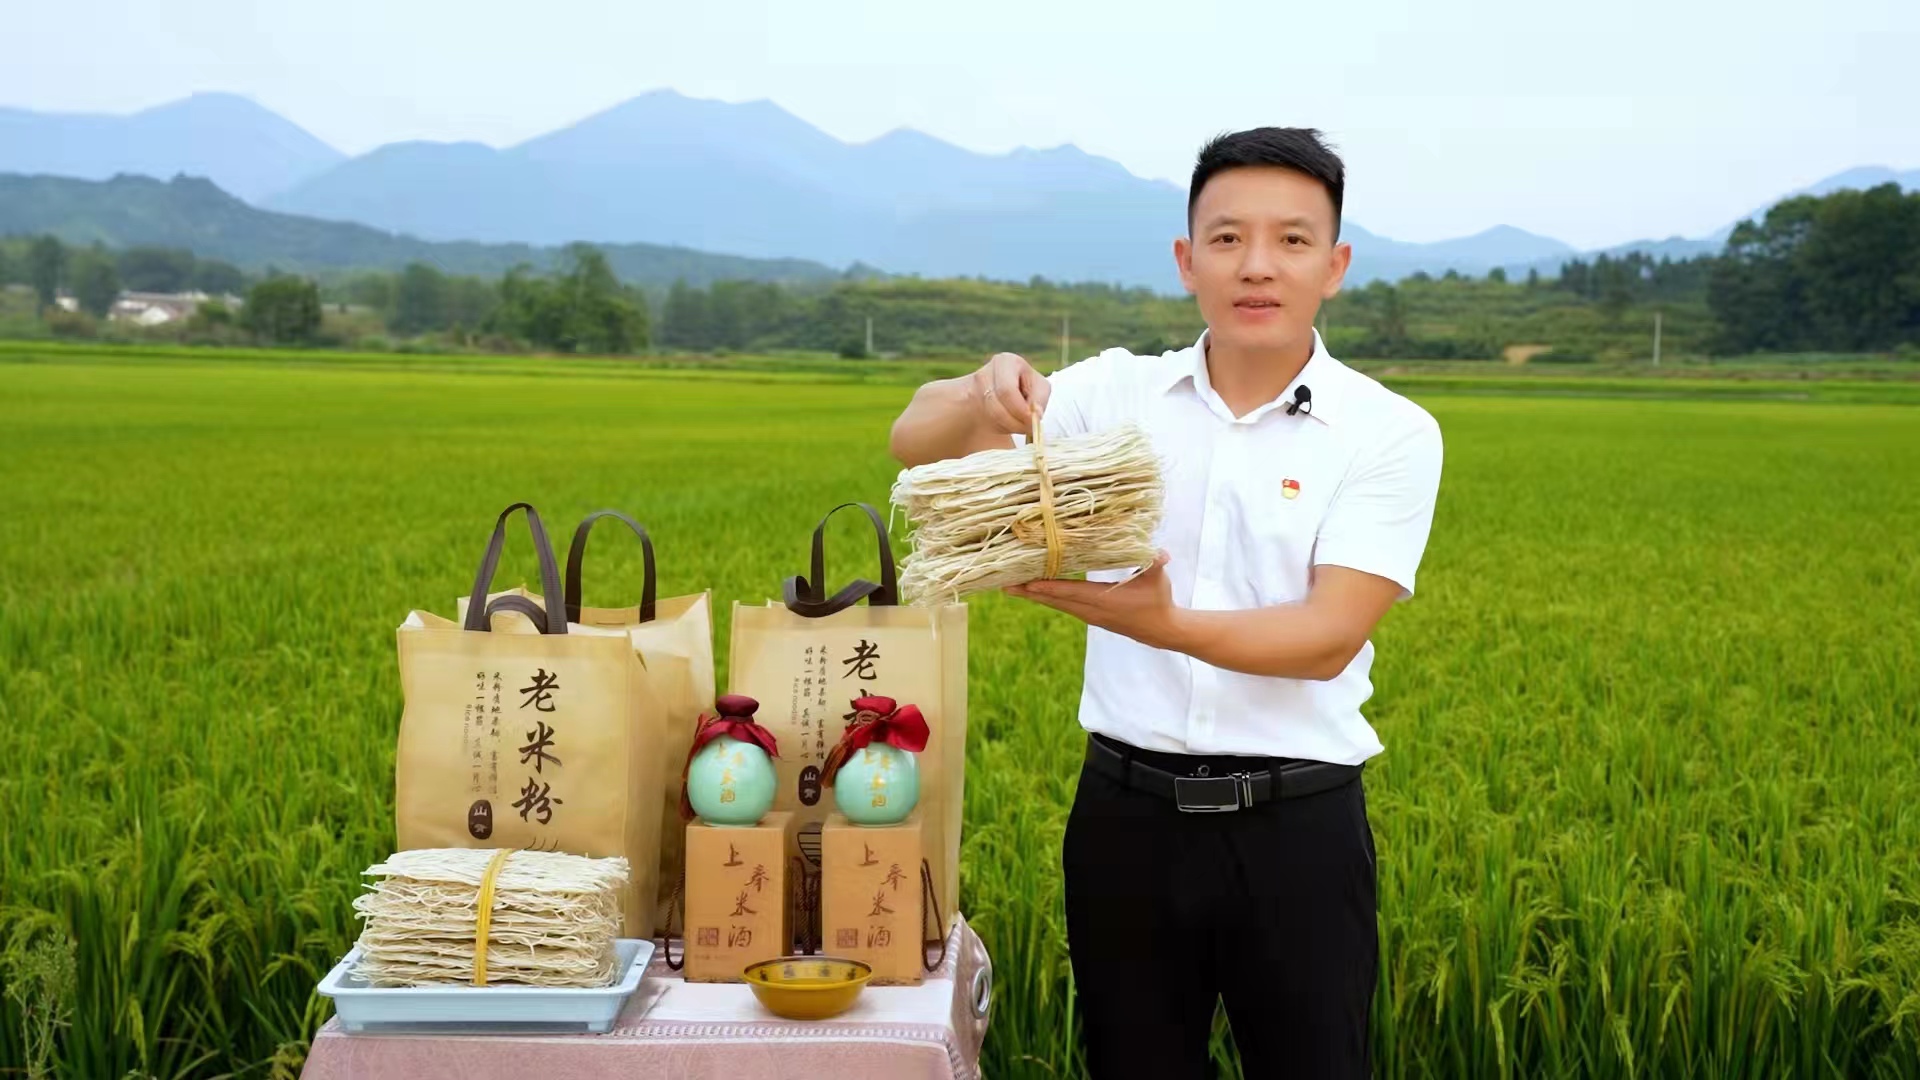 修水县委组织部驻村第一书记卢和为山背米粉和米酒代言.jpg